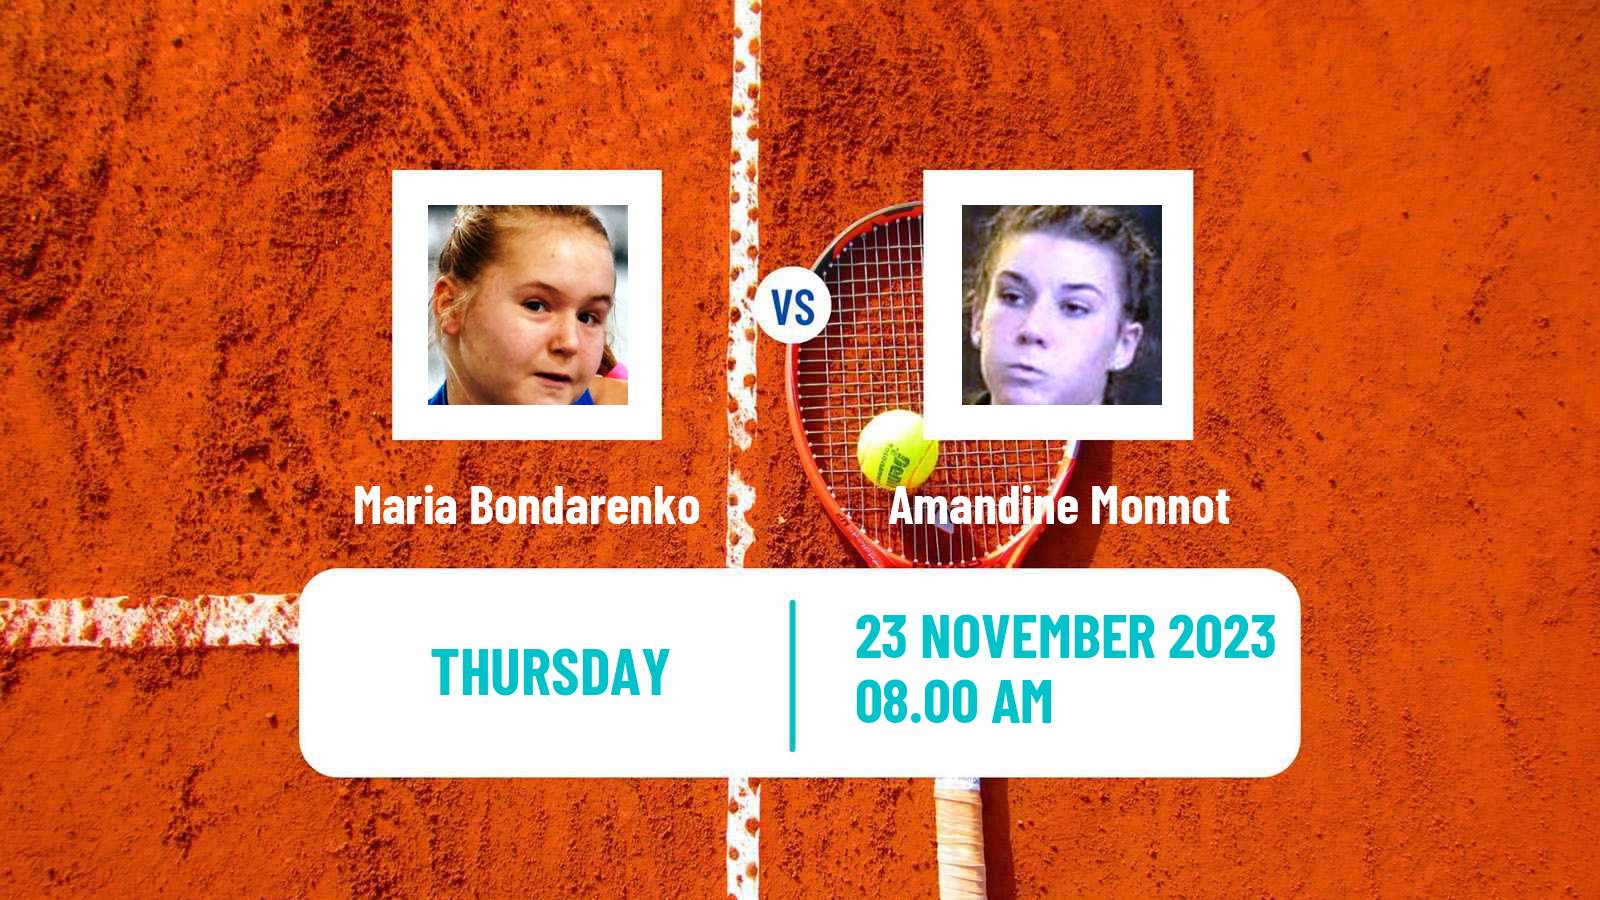 Tennis ITF W25 Lousada Women Maria Bondarenko - Amandine Monnot